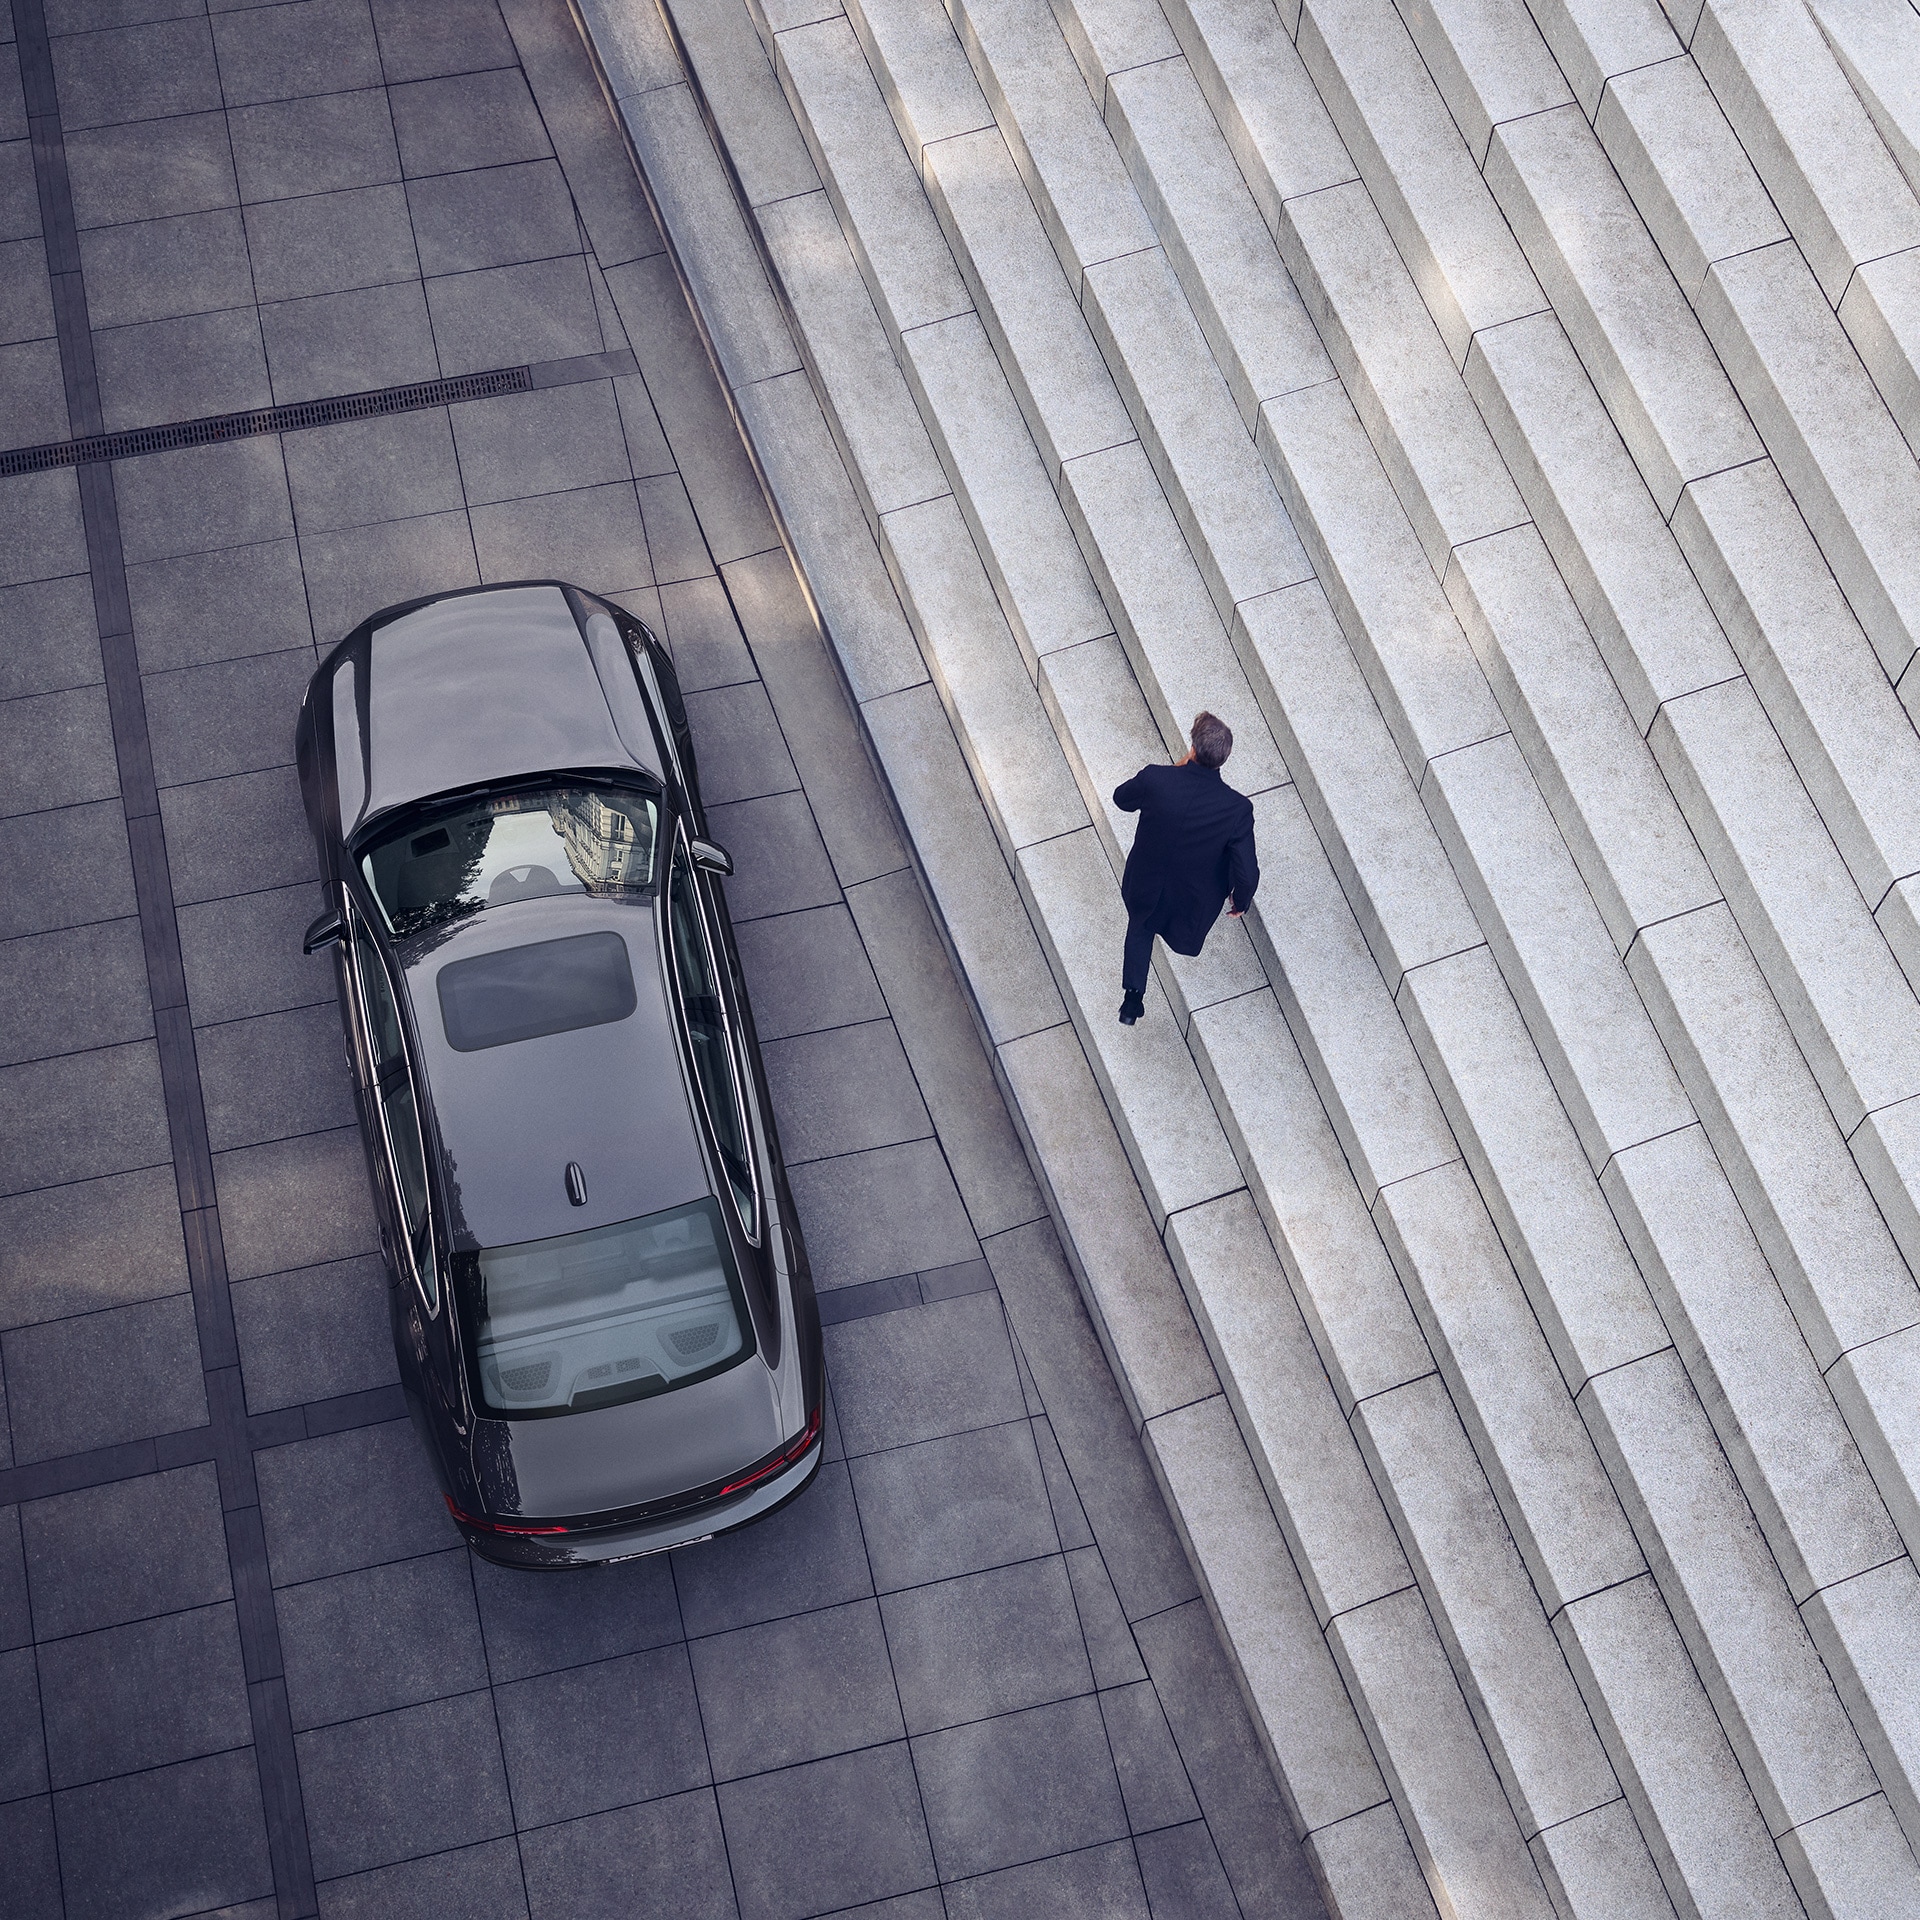 Ένα Volvo S90 σταθμευμένο μπροστά από μια σκάλα, με έναν άνδρα να απομακρύνεται από το αυτοκίνητο.